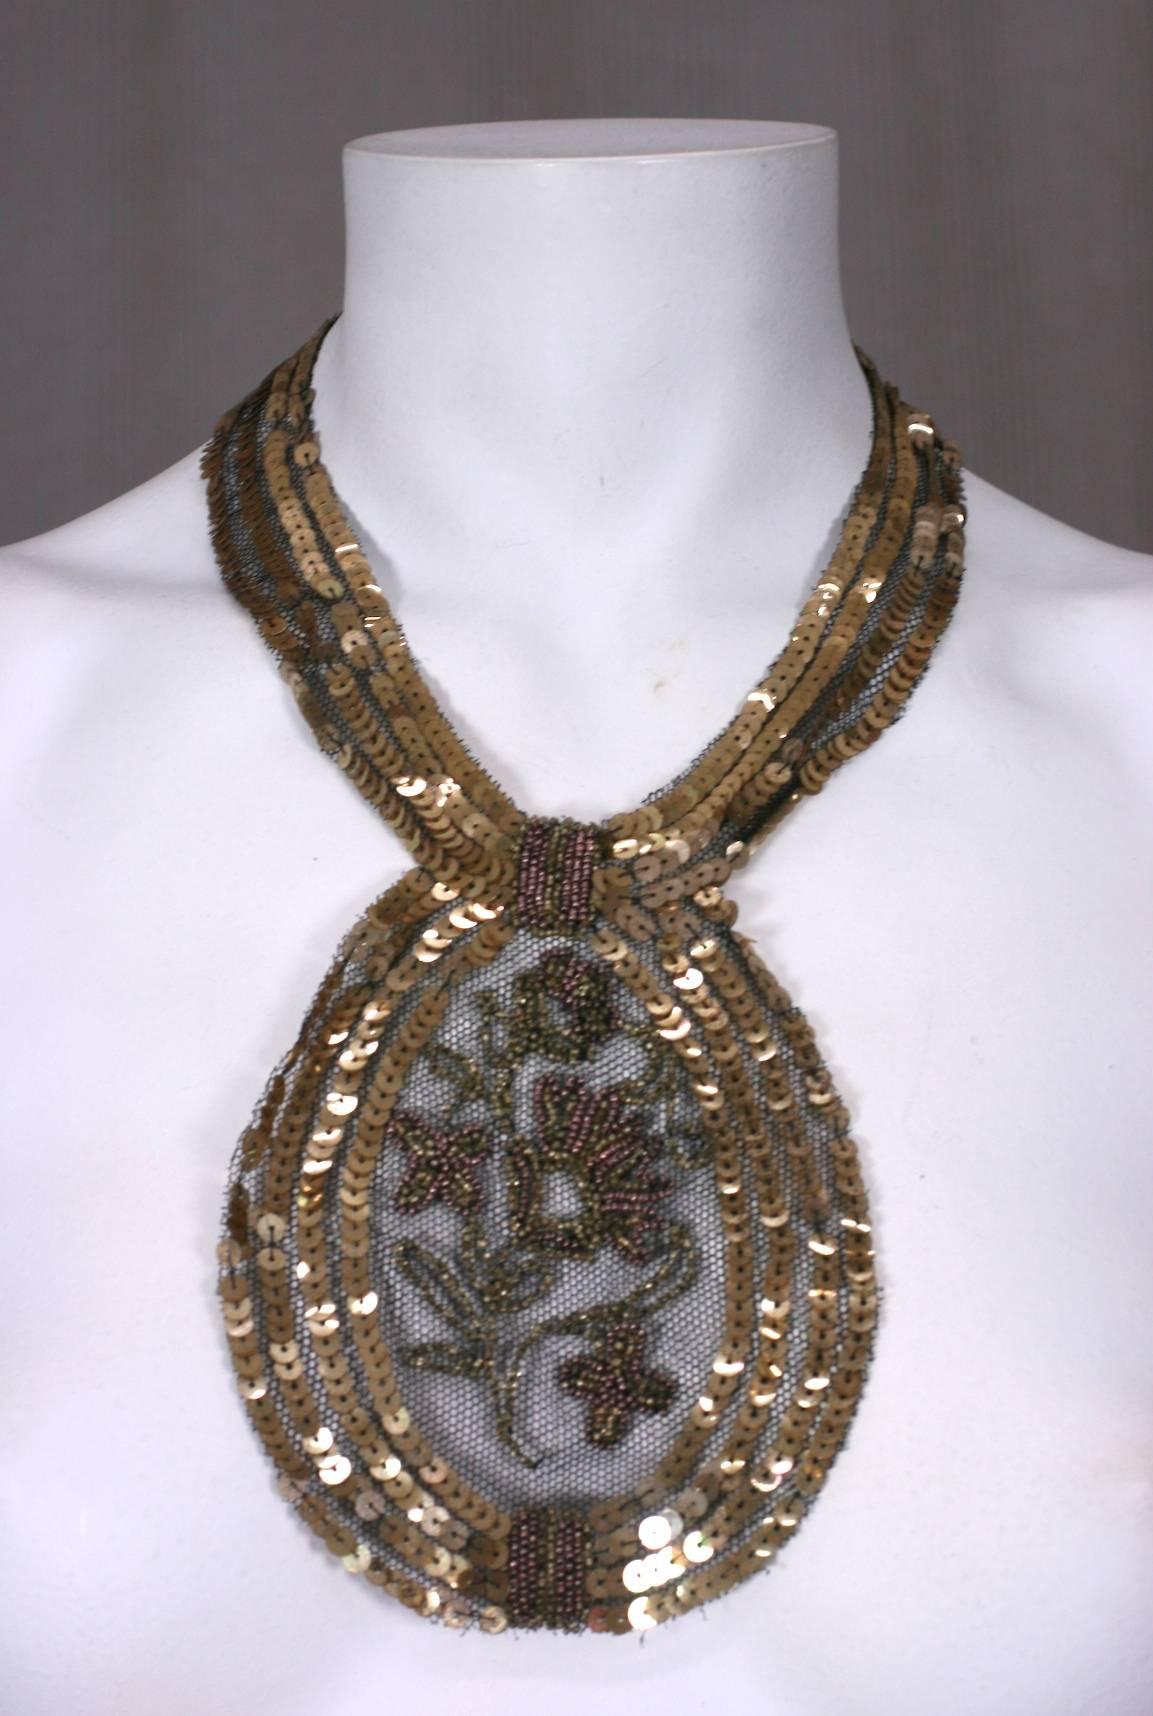 halsschmuck mit Pailletten und Perlen aus den 1920er Jahren, der wahrscheinlich als Kleiderschmuck entstand, aber mit einem zusätzlichen Verschluss in eine Halskette umgewandelt wurde. Handgestickte goldene Pailletten und Perlen sind auf einen